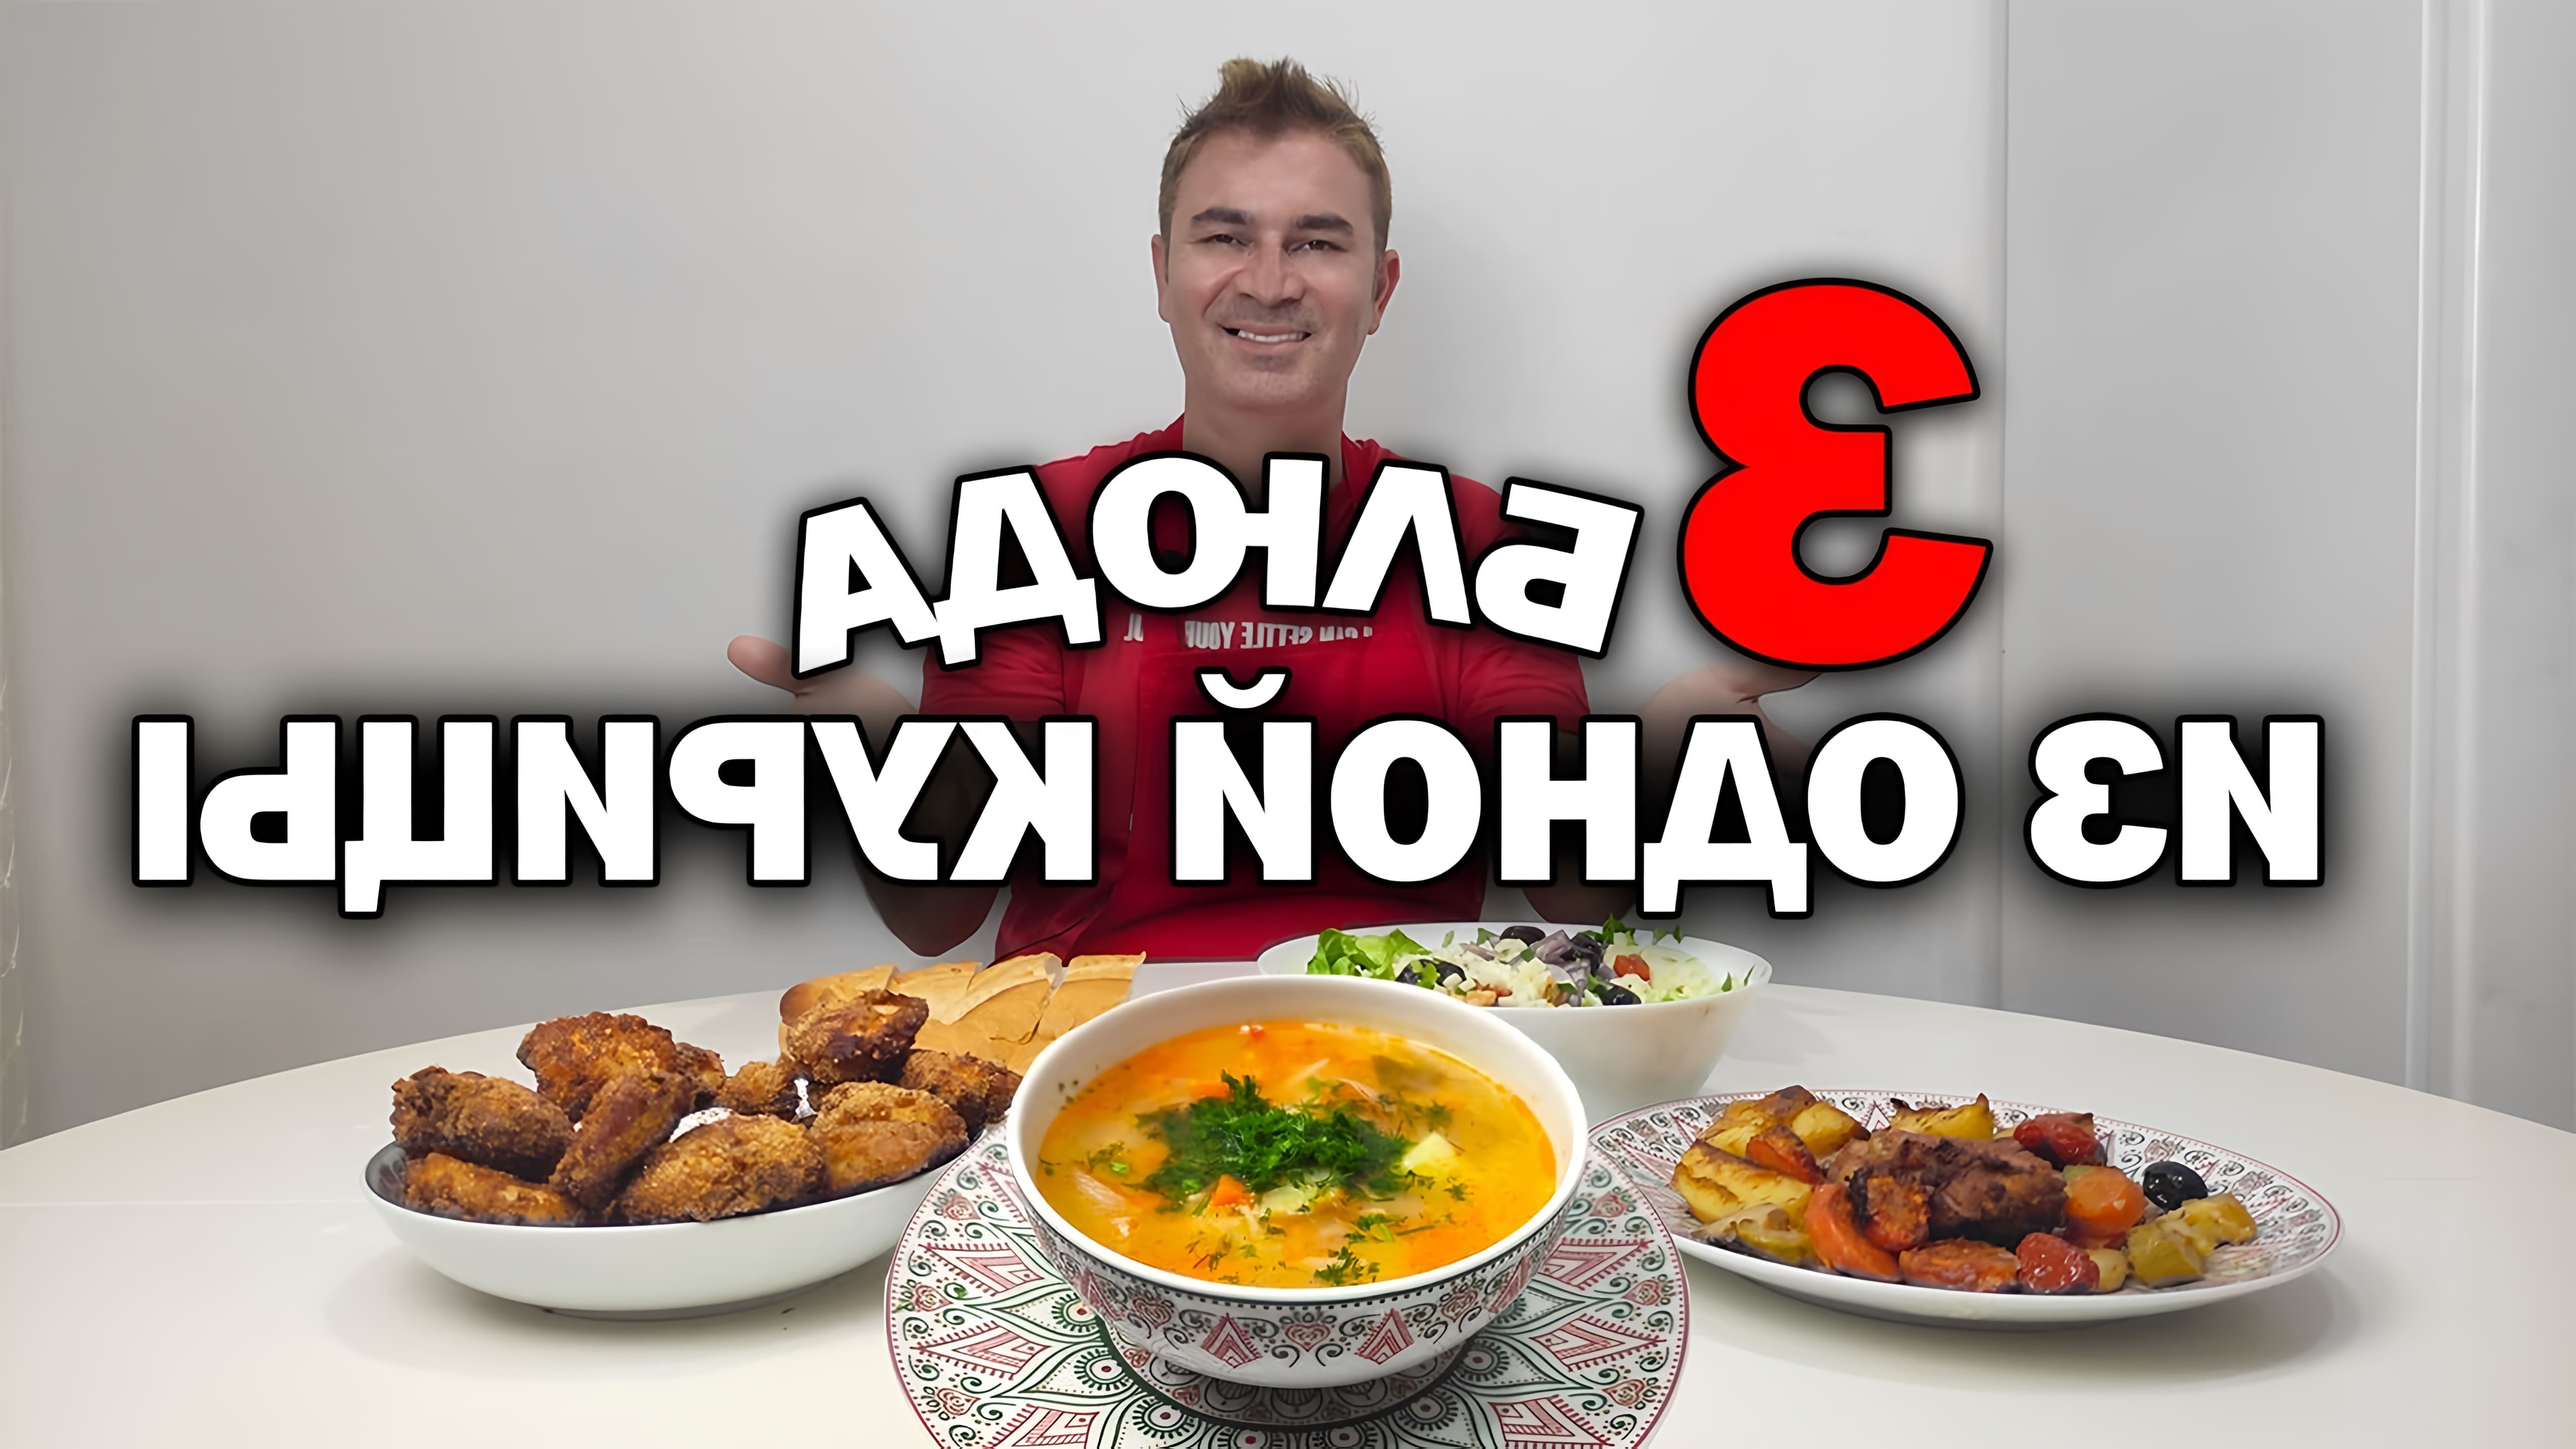 В этом видео мужчина по имени Юсуф готовит три блюда из одной курицы: суп, запеченную курицу с овощами и салат из трески